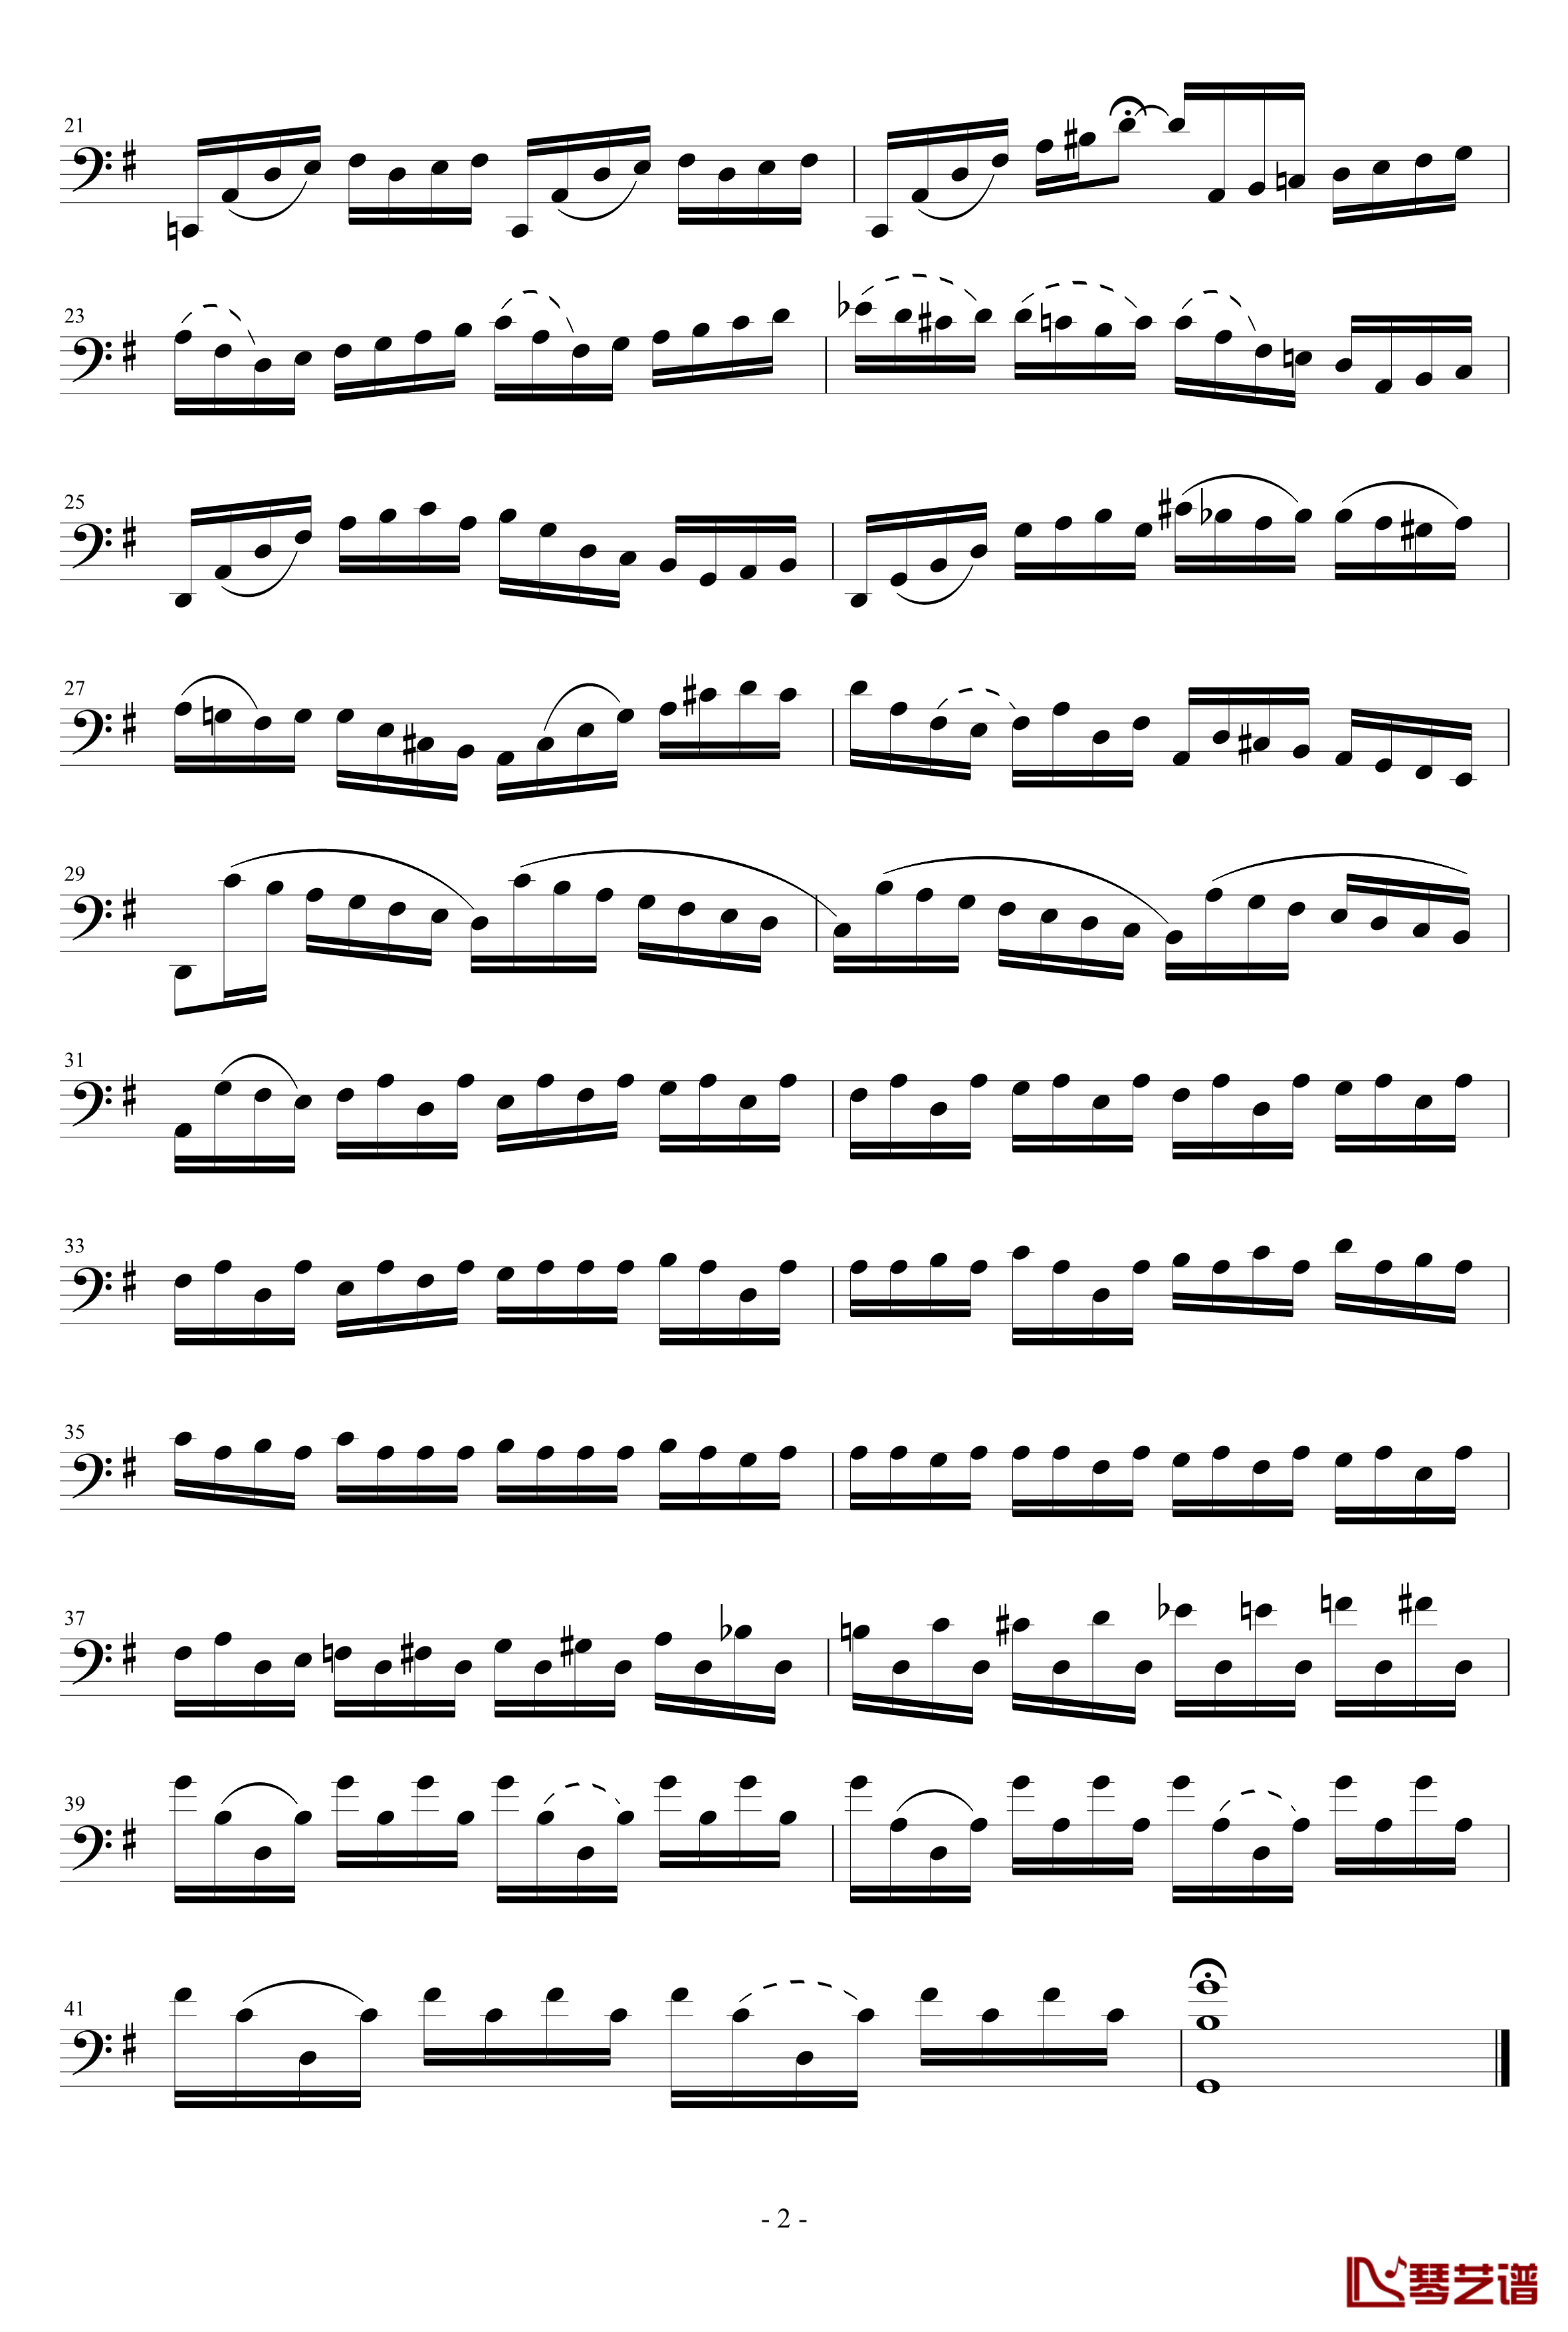 巴赫大提琴钢琴谱-1-雅克·奥芬巴赫2